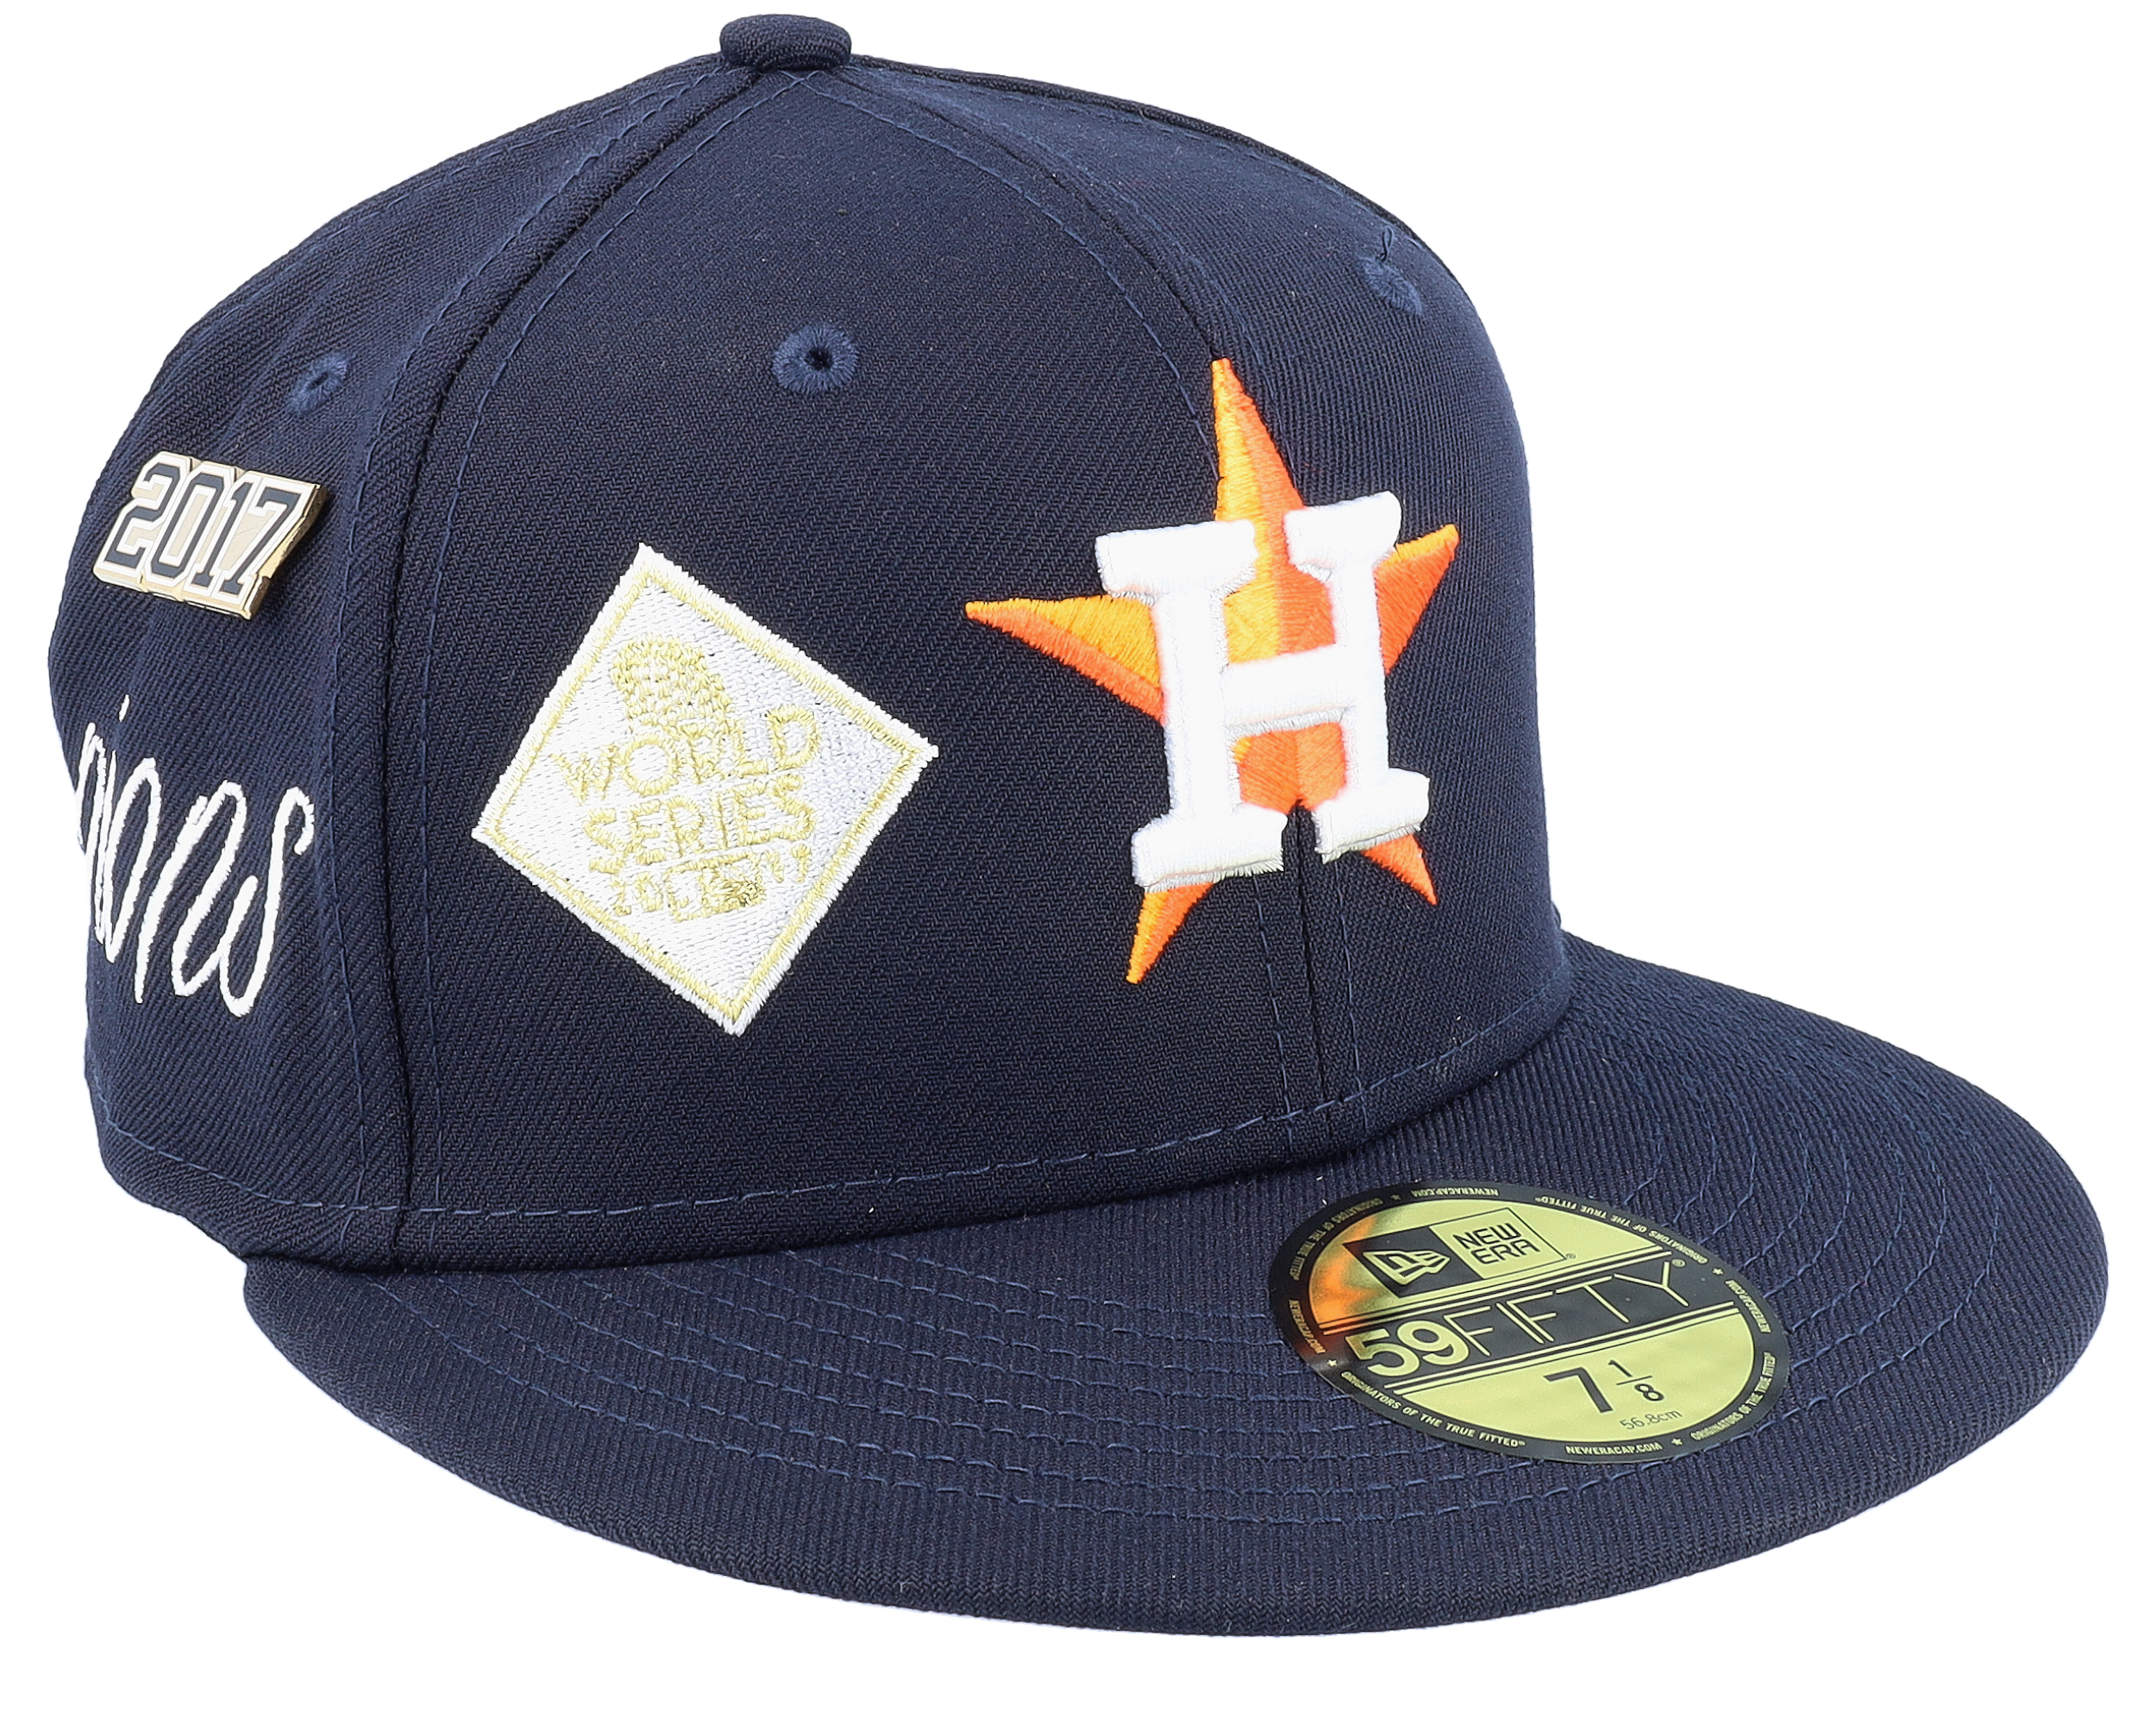 astros world series hat